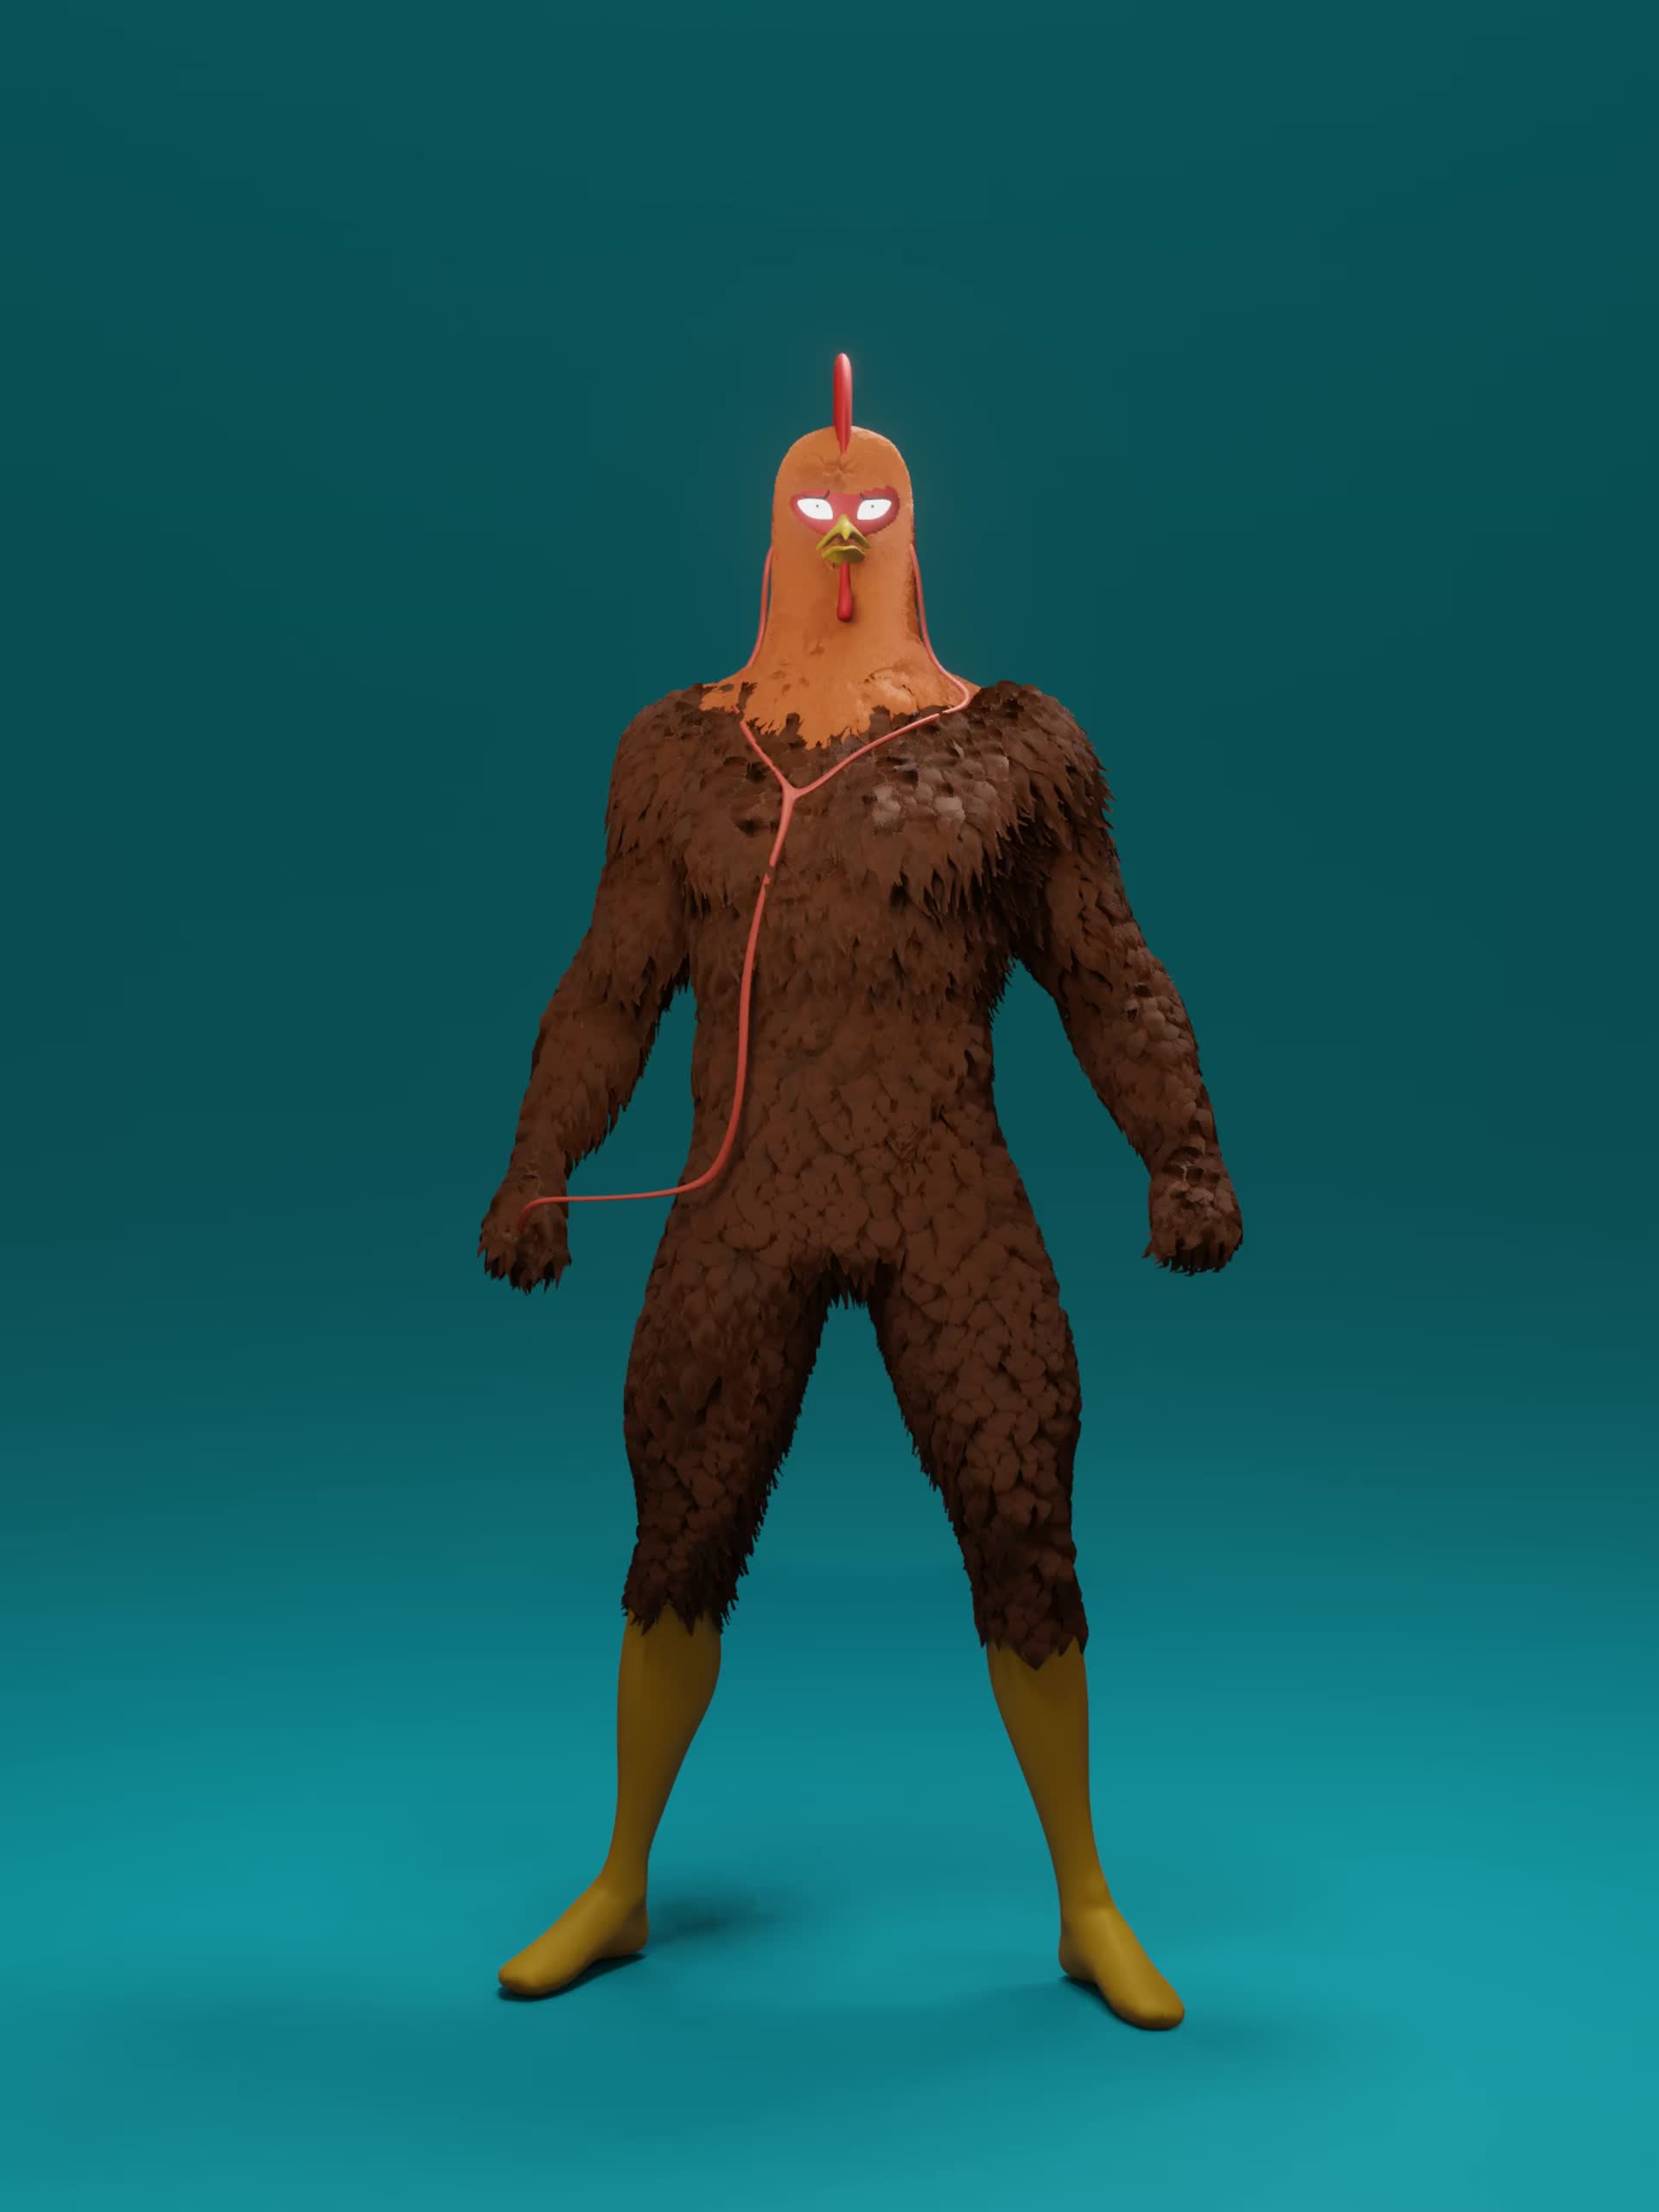 Lostreak chicken characters